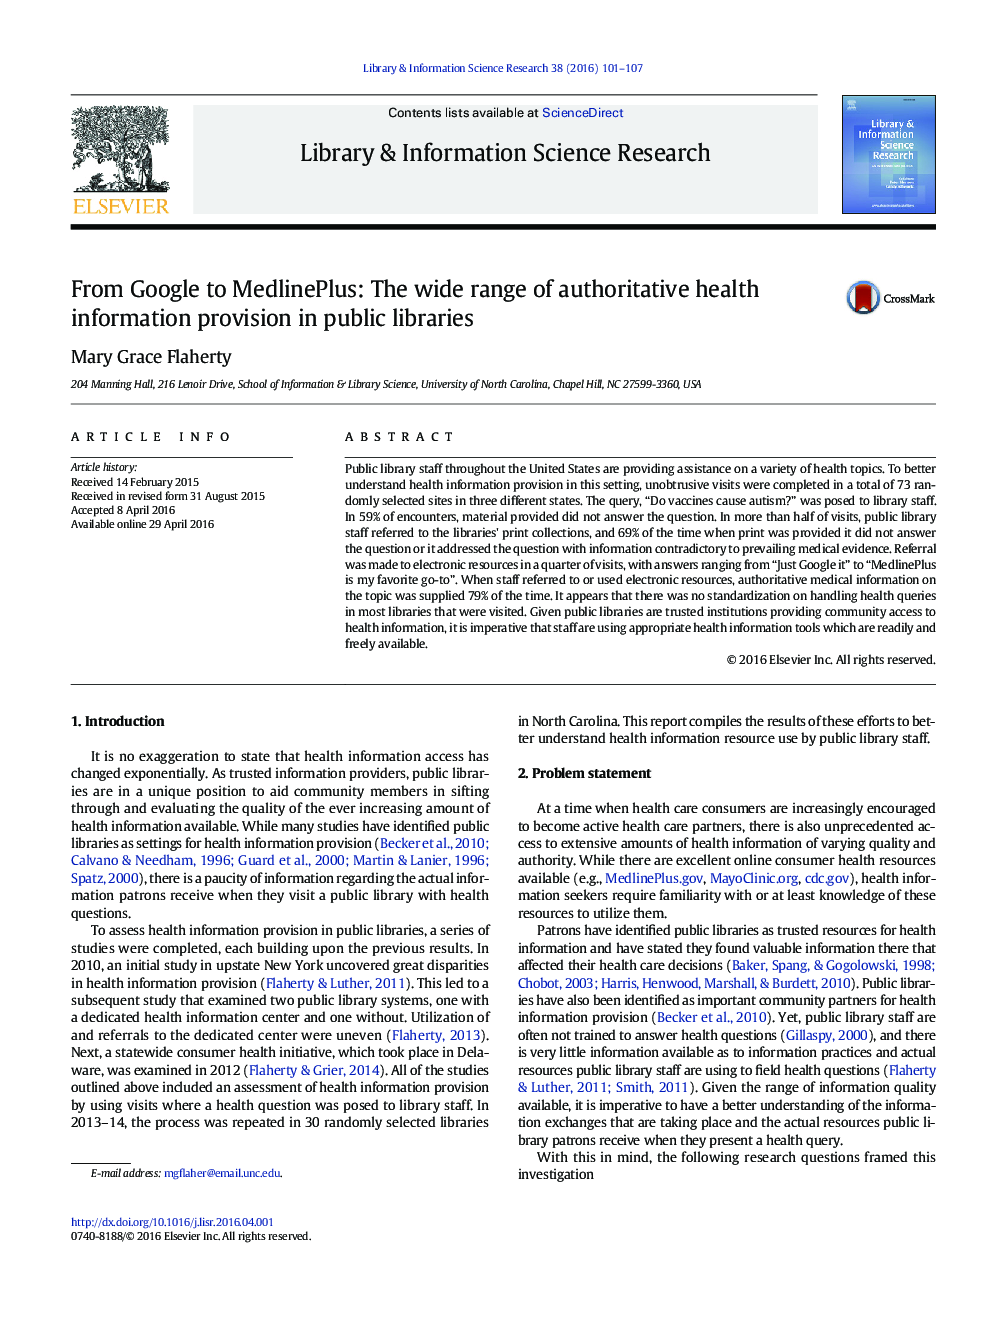 از Google تا MEDLINE plus: طیف گسترده ای از ارائه اطلاعات بهداشتی معتبر در کتابخانه های عمومی